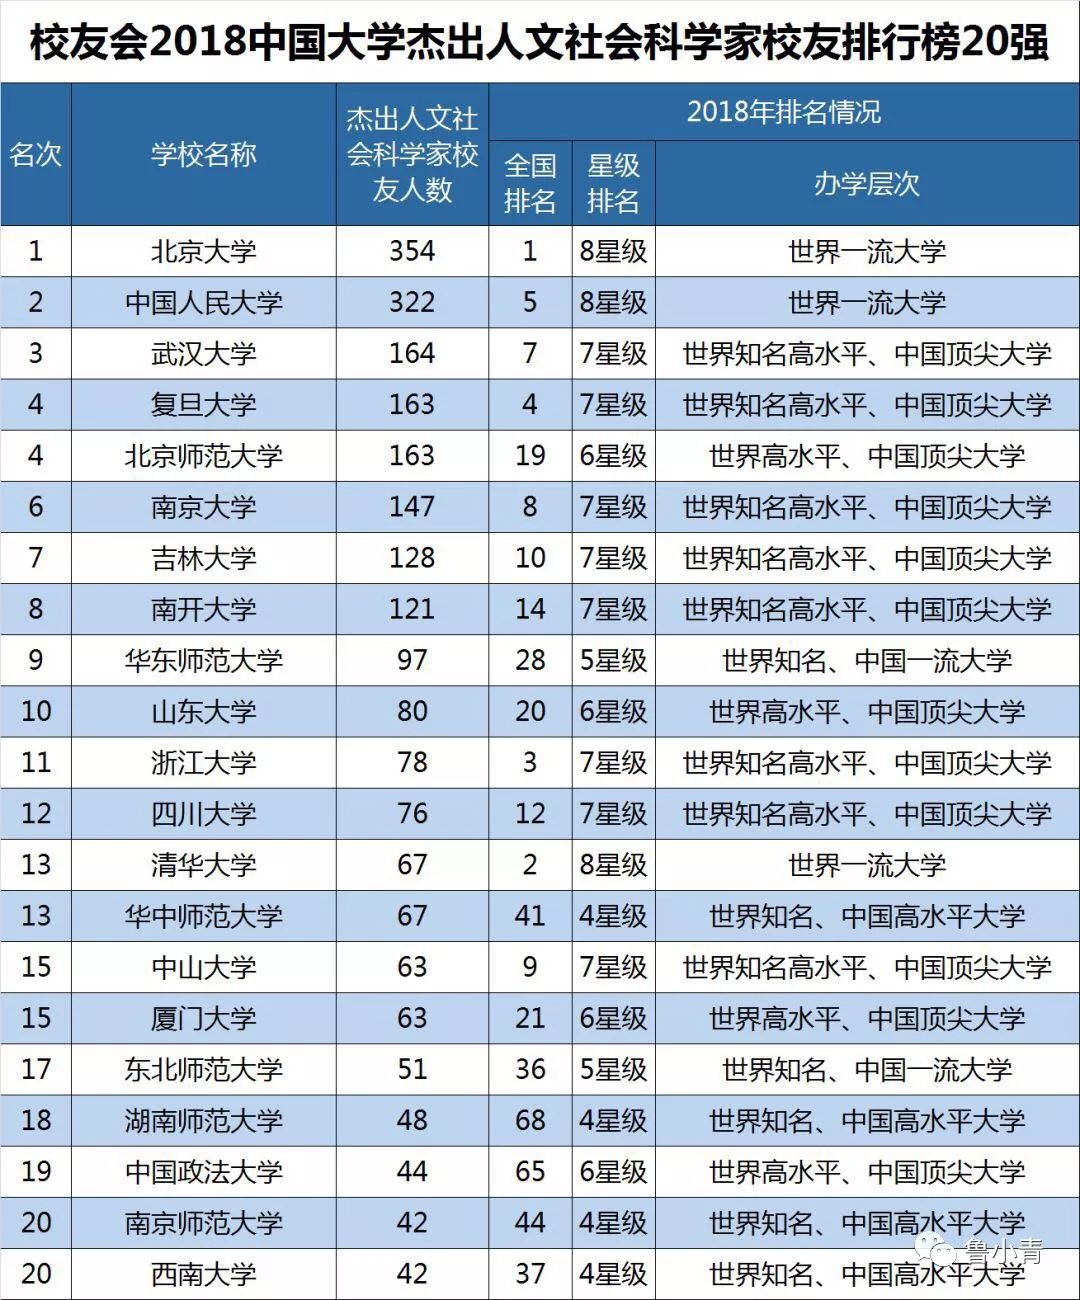 2018中国高校排行榜_中国未来教育十大重要趋势 中国最好大学排名遭质